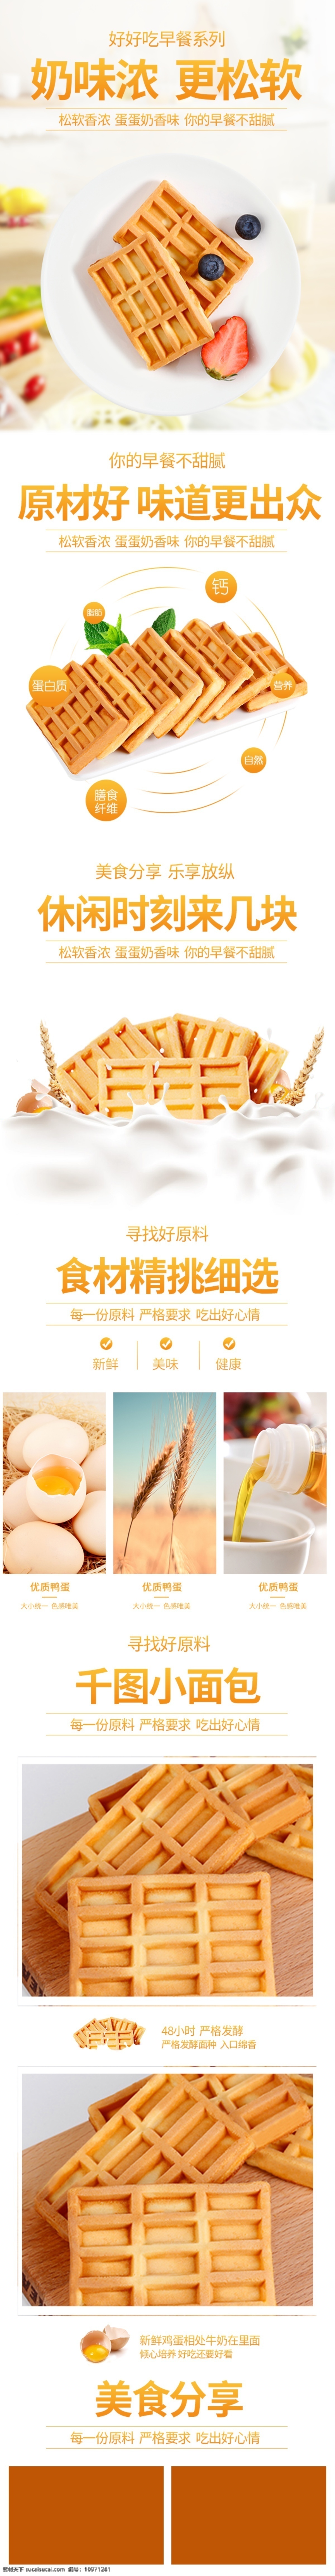 白色 清新 食品 产品 面包 饼干 零食 详情 页 模板 详情页 天猫 食品茶饮 淘宝